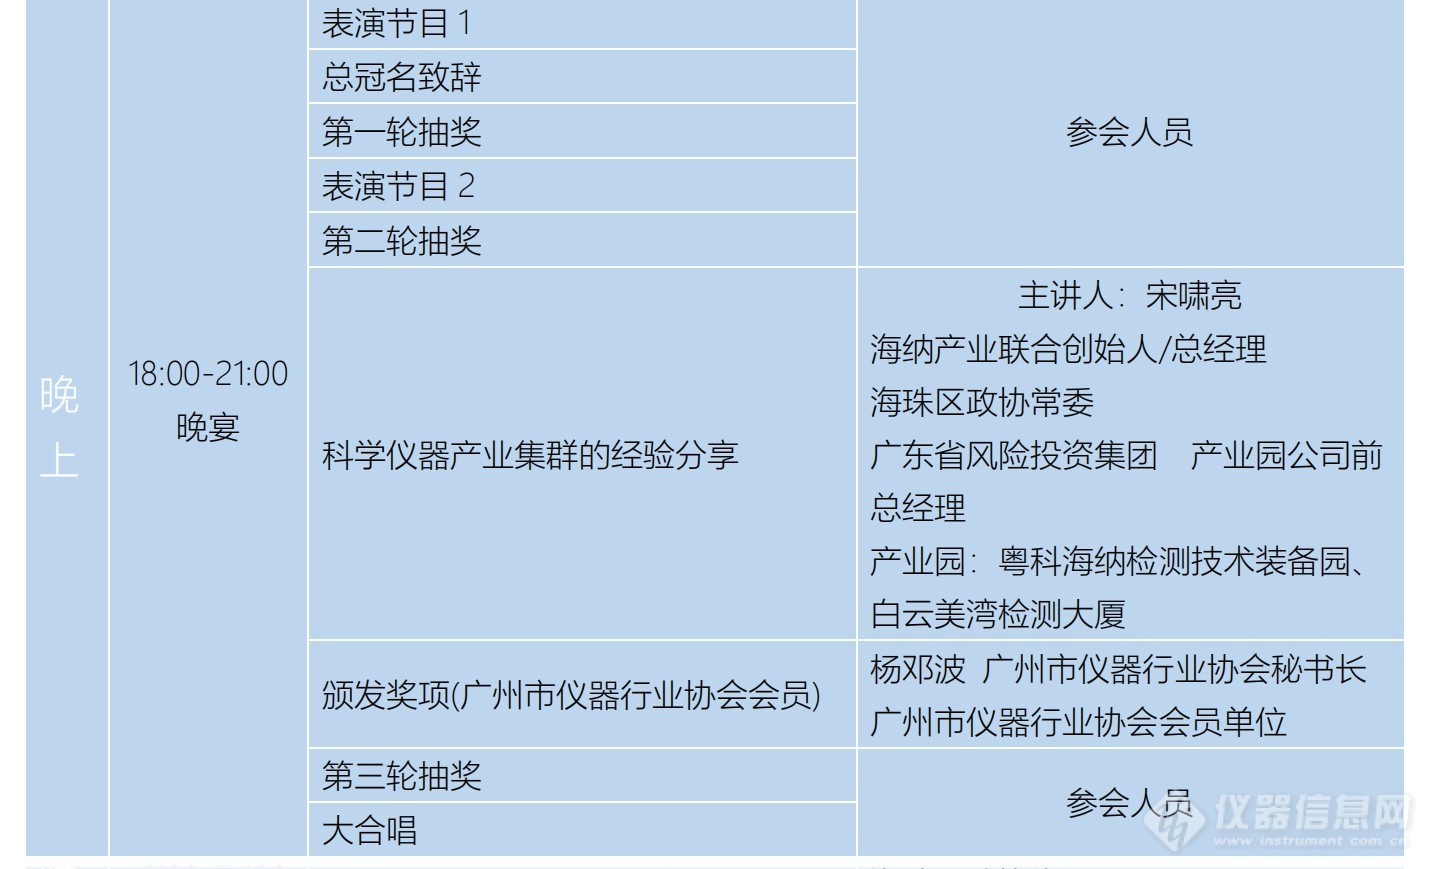 广州市仪器行业协会年会暨推动科学产业发展创新大会